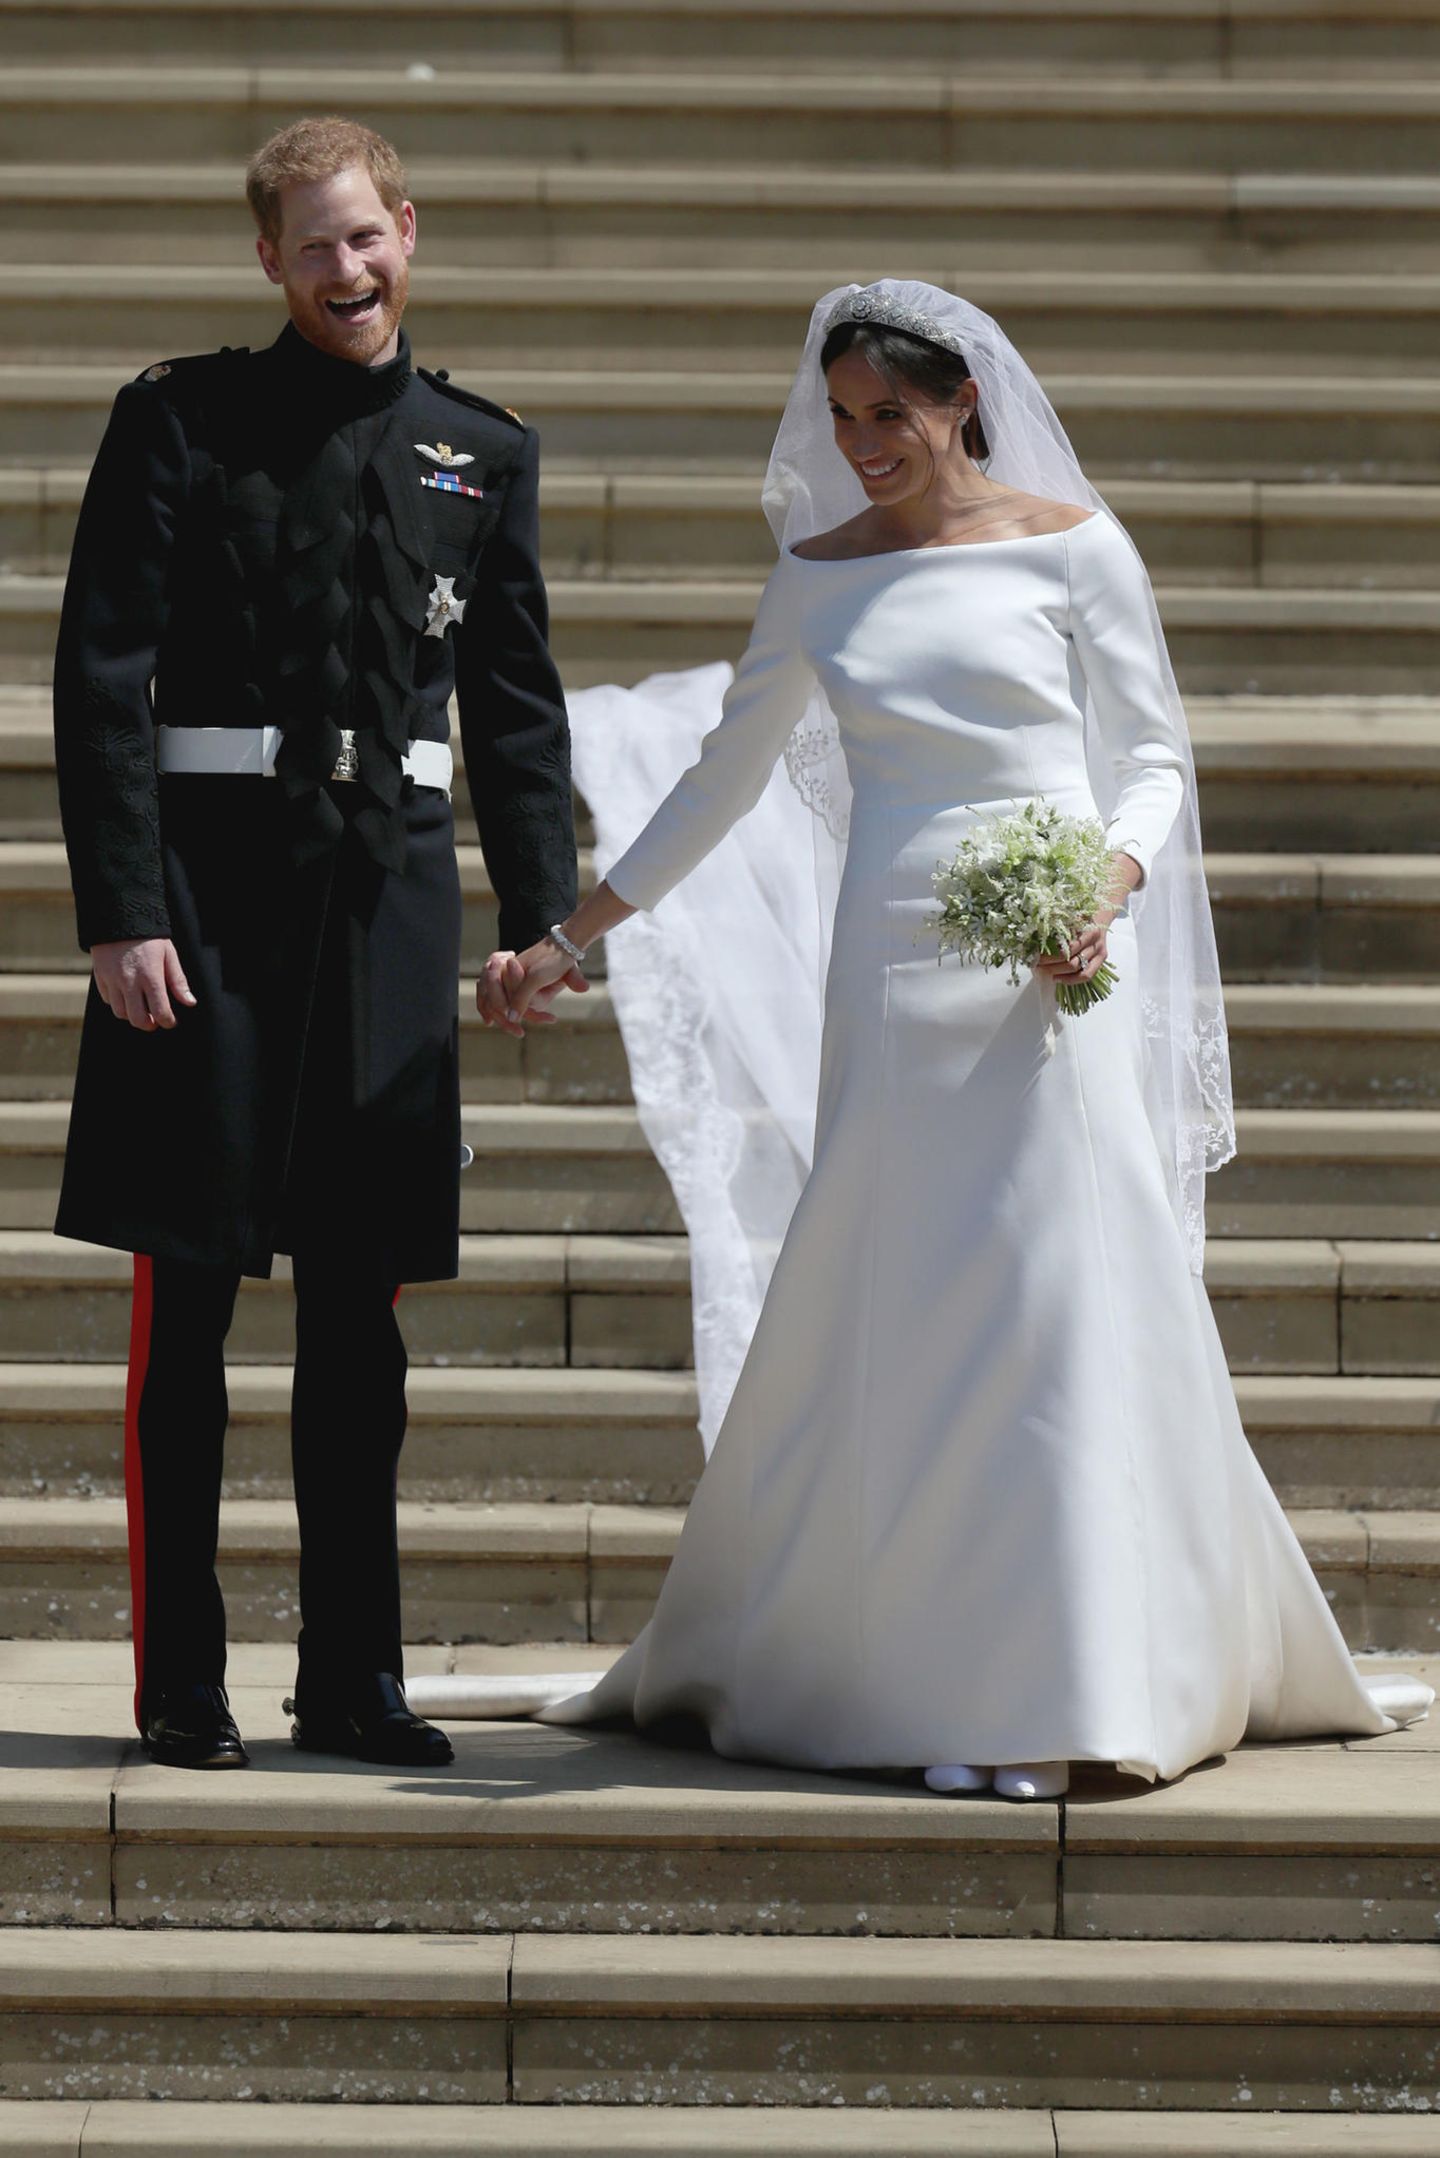 Die Fotos dieser royalen Hochzeit gingen um die ganze Welt: Als Meghan ihrem Harry das Jawort gibt, trägt sie ein schlichtes weißes Kleid von Givenchy. Mit ihrem klassisch eleganten Stil wird sie zum Vorbild für unzählige Frauen - so auch für Prinzessin Mary von Dänemark. 